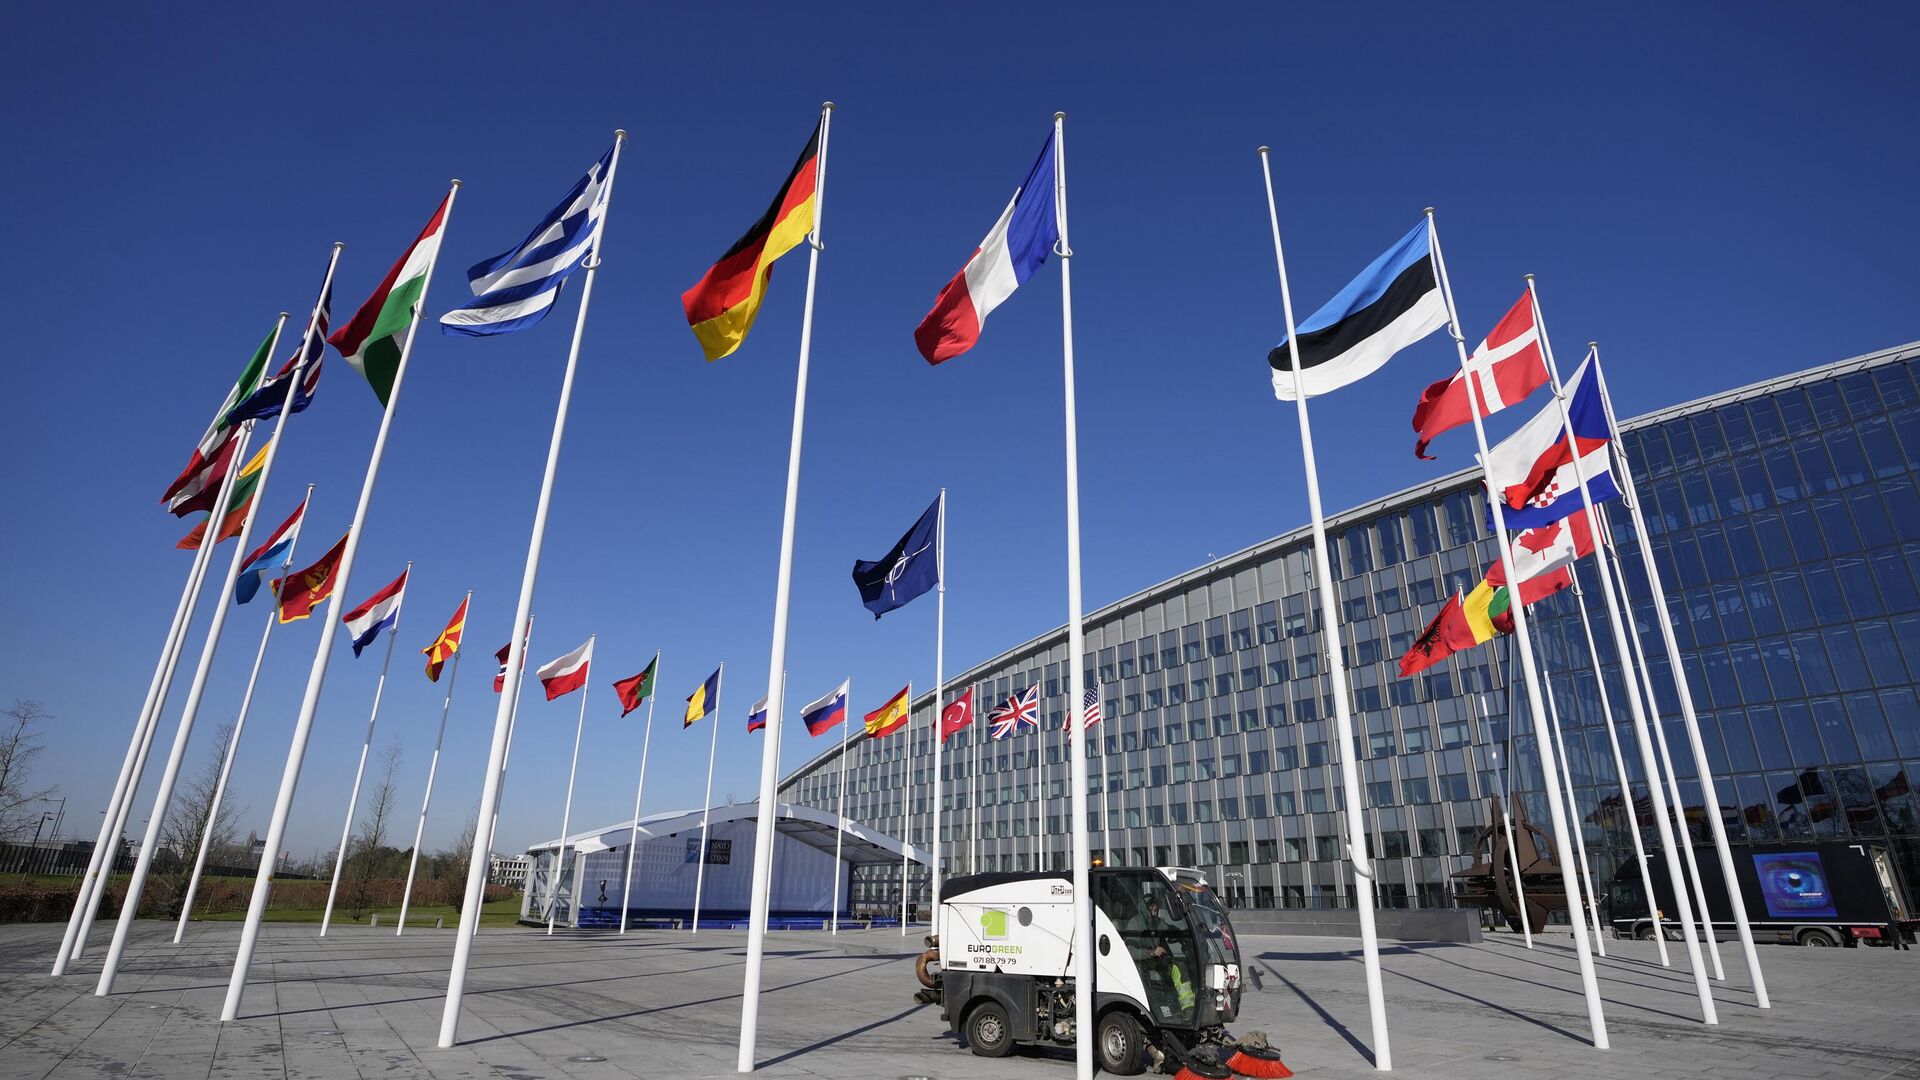 Pustoy flagshtok mejdu flagami Fransii i Estonii u zdaniya shtab-kvartiri NATO v Brussele - Sputnik O‘zbekiston, 1920, 27.01.2024